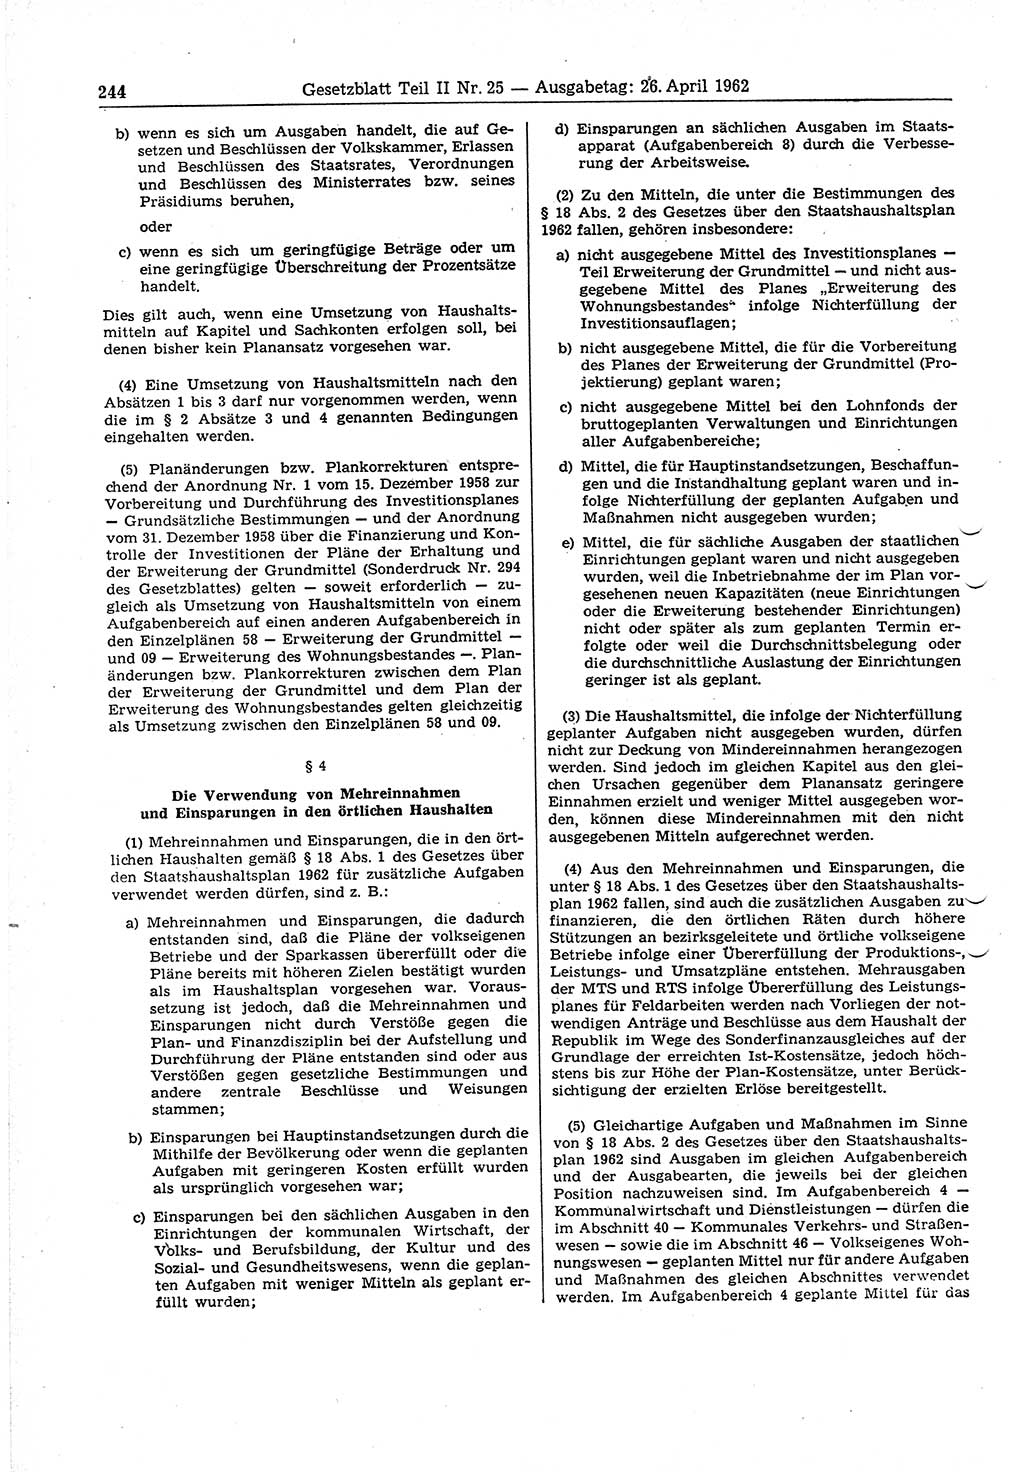 Gesetzblatt (GBl.) der Deutschen Demokratischen Republik (DDR) Teil ⅠⅠ 1962, Seite 244 (GBl. DDR ⅠⅠ 1962, S. 244)